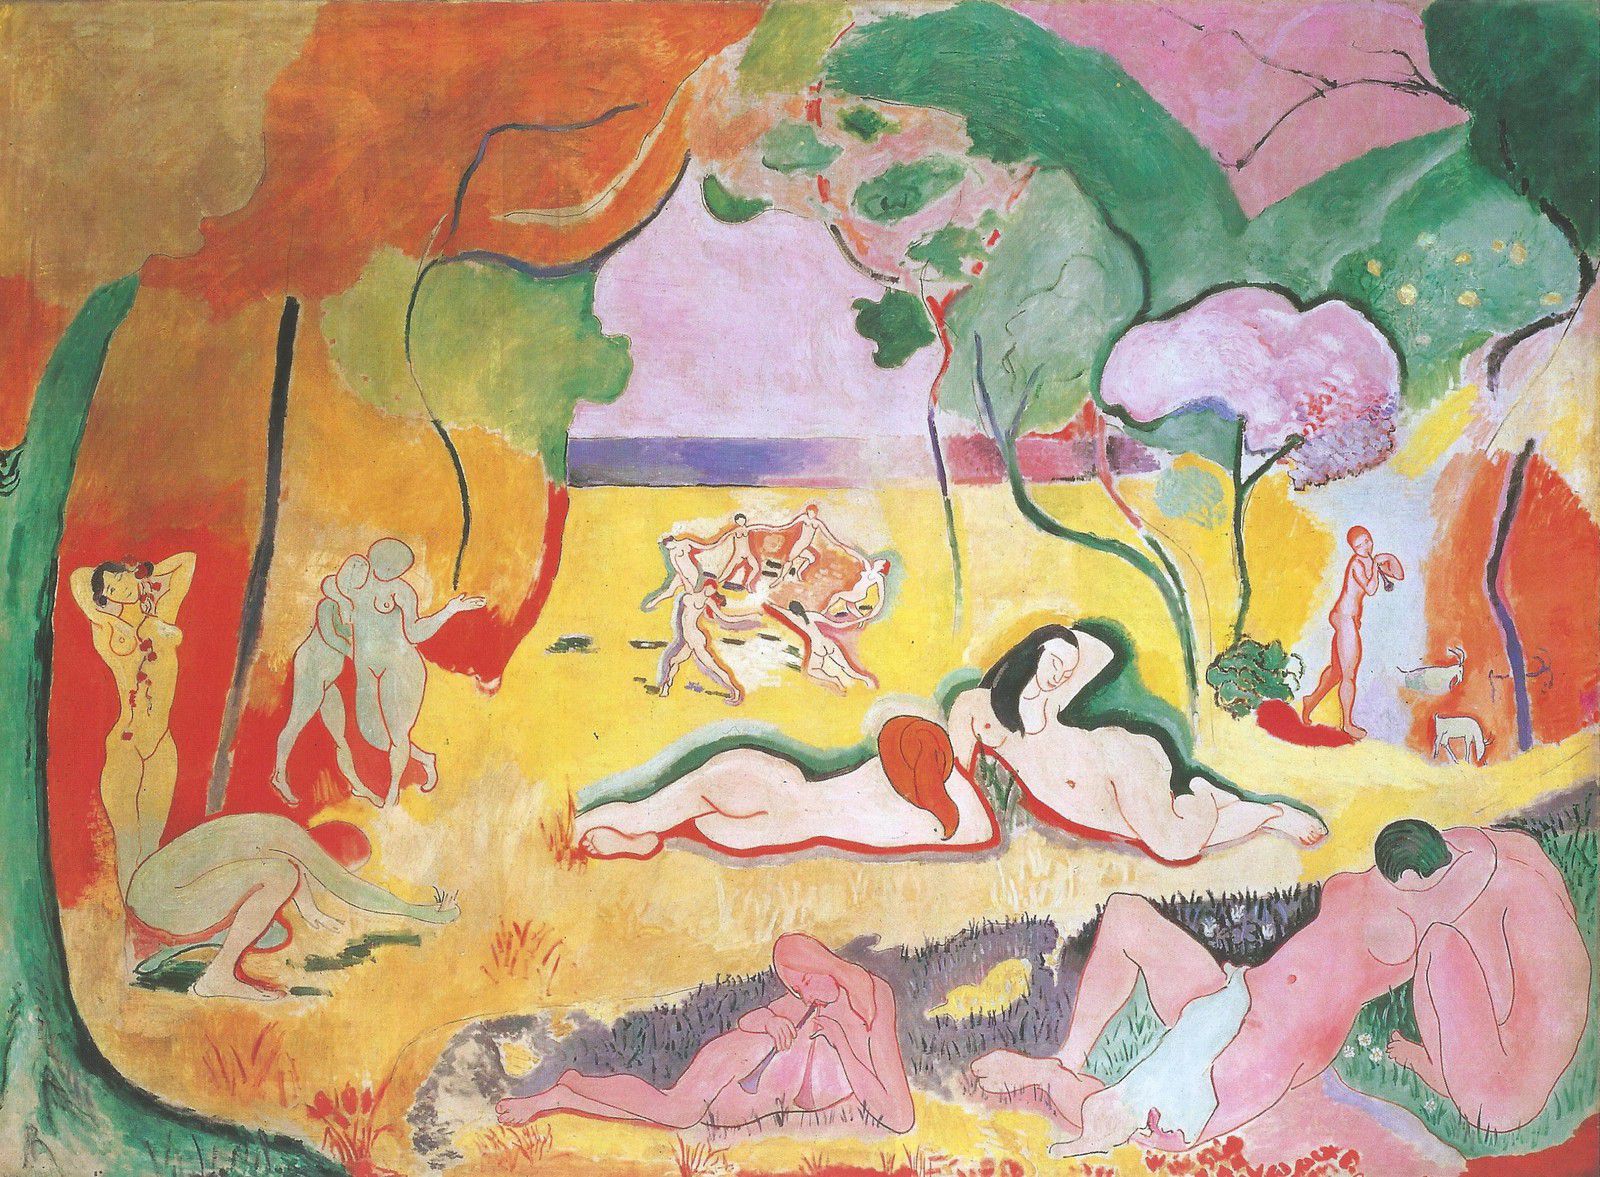 Le bonheur de vivre de Matisse, 1905-06